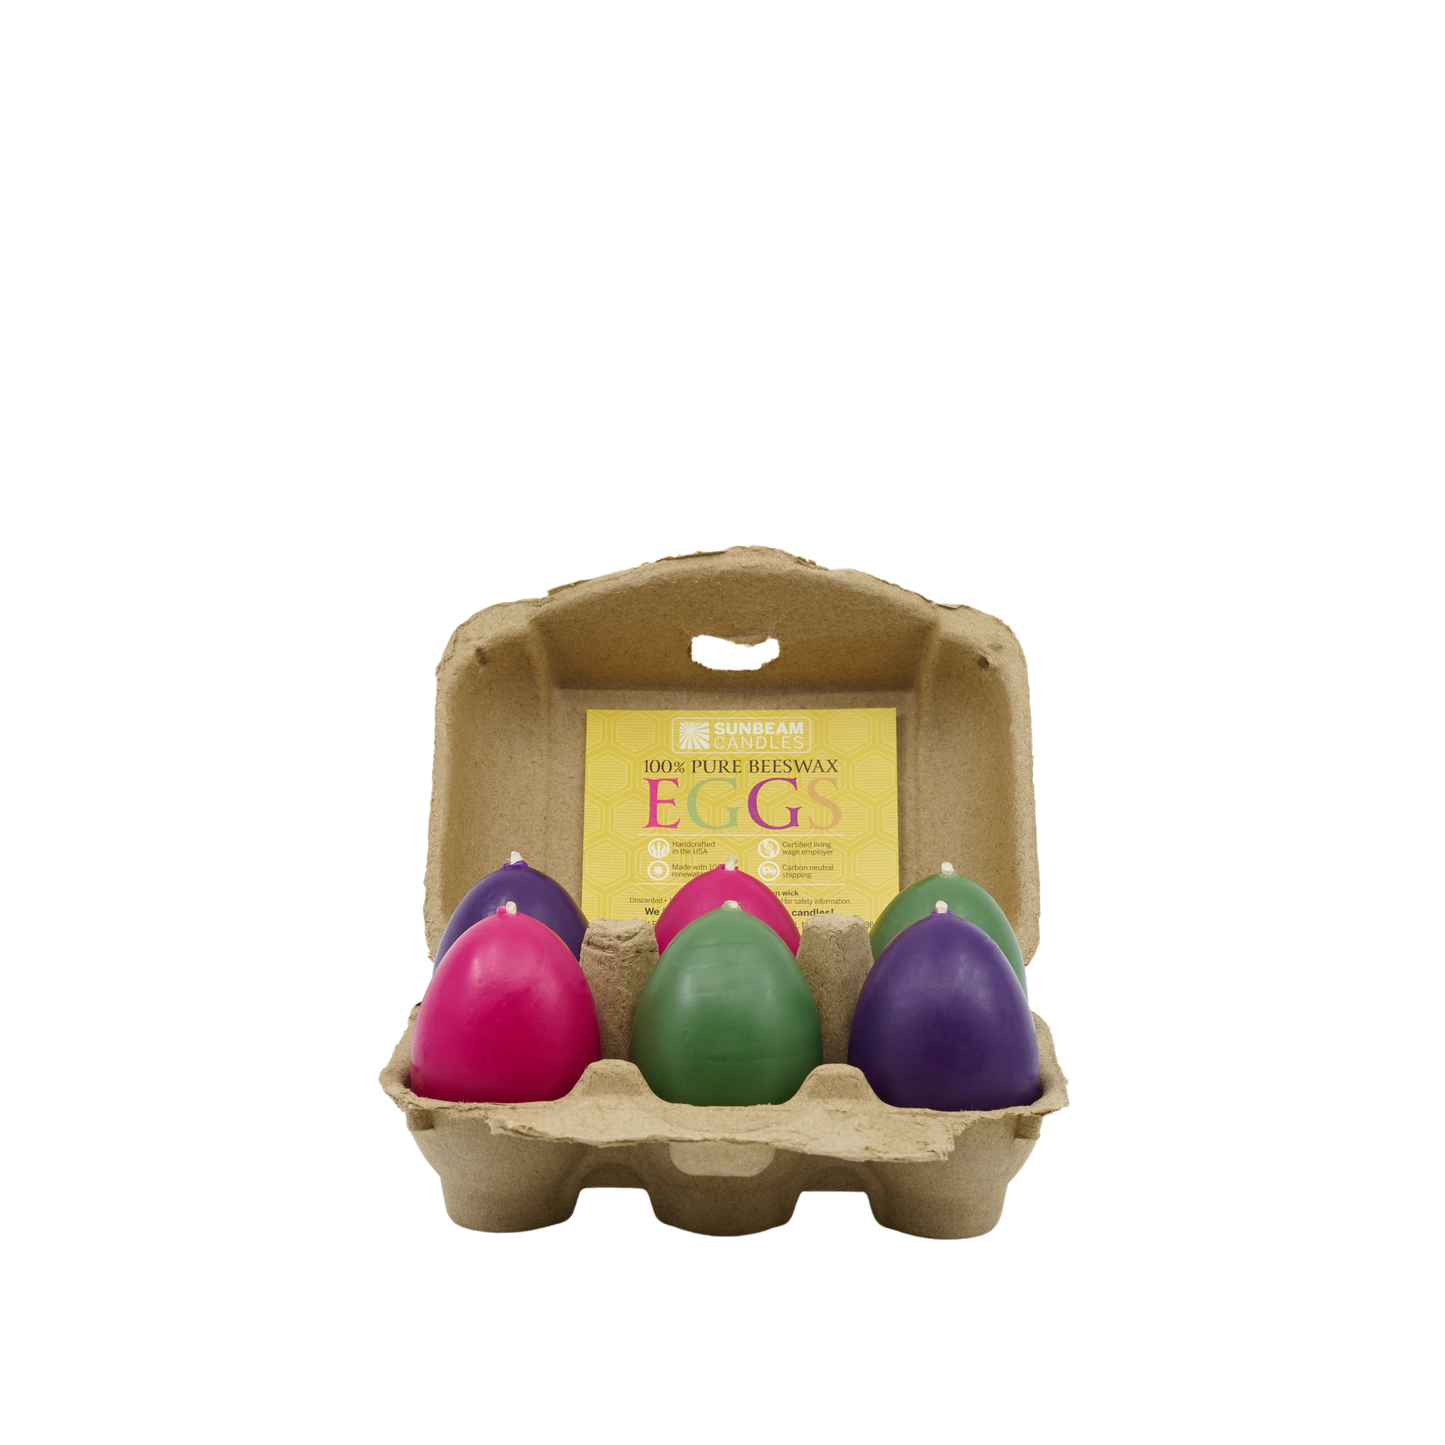 Egg Votives in Egg Carton (6-ct)